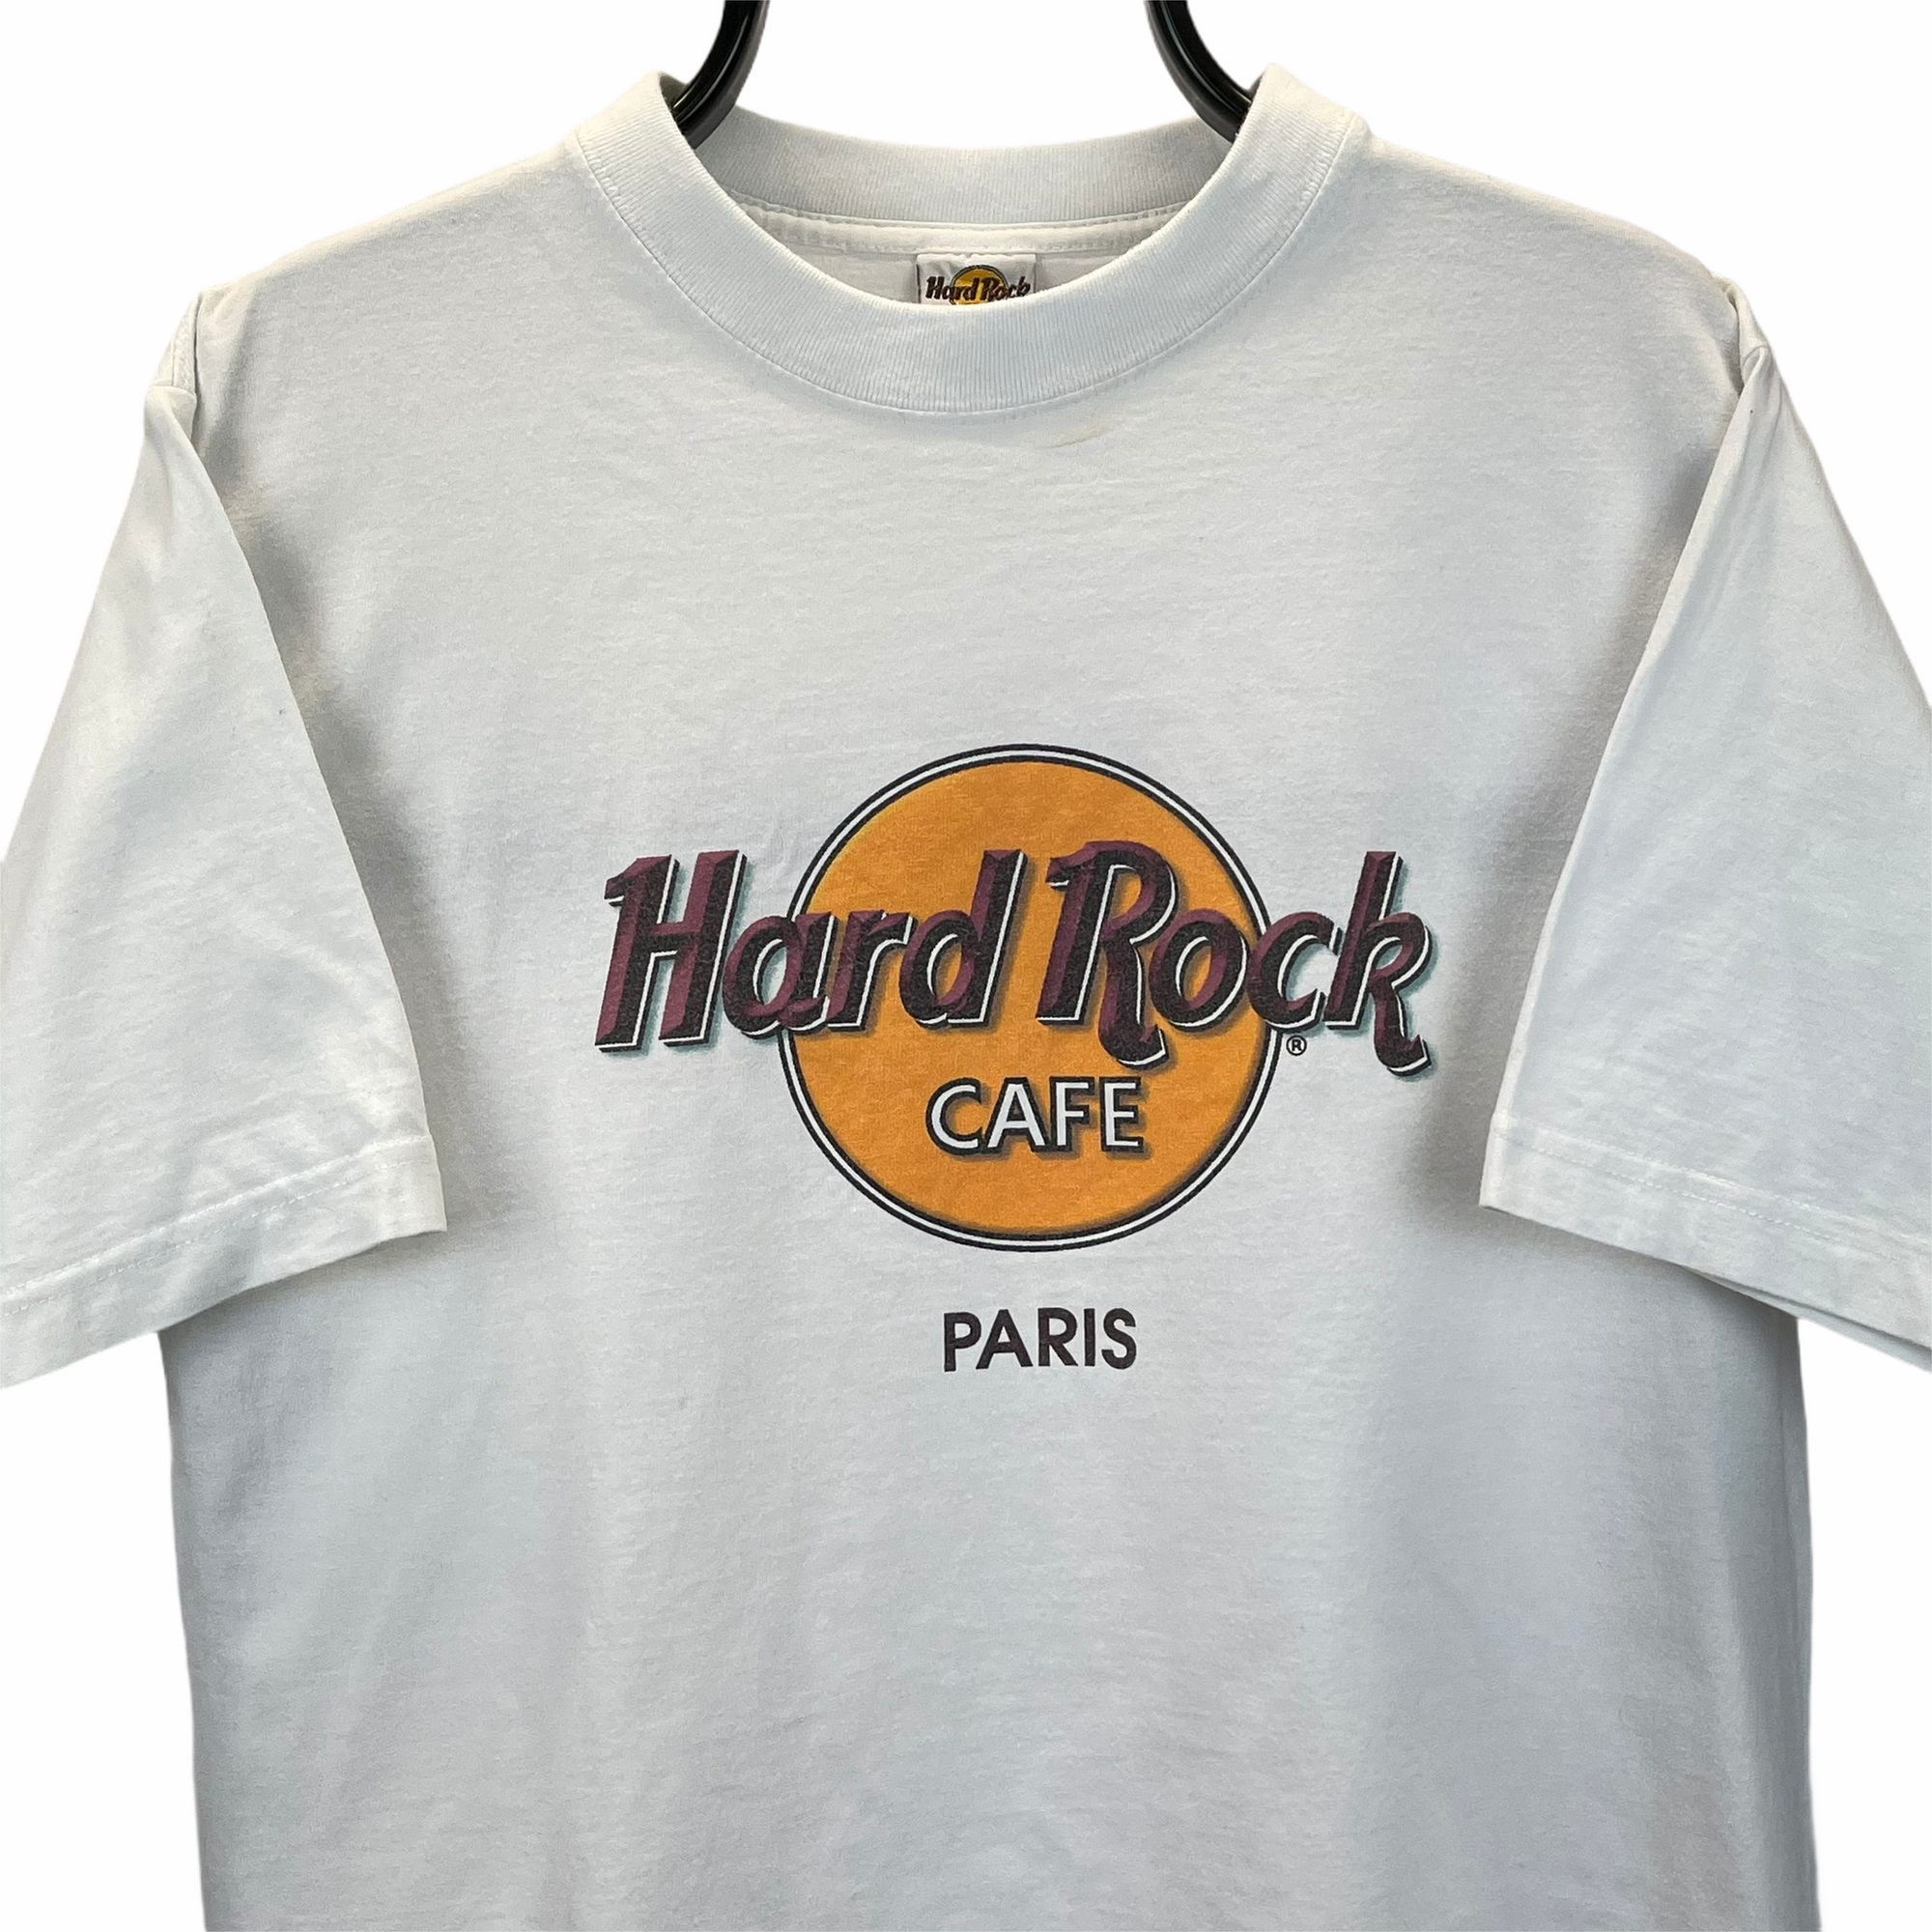 Vintage 90s Hard Rock Cafe Paris Tee - Men's Medium/Women's Large